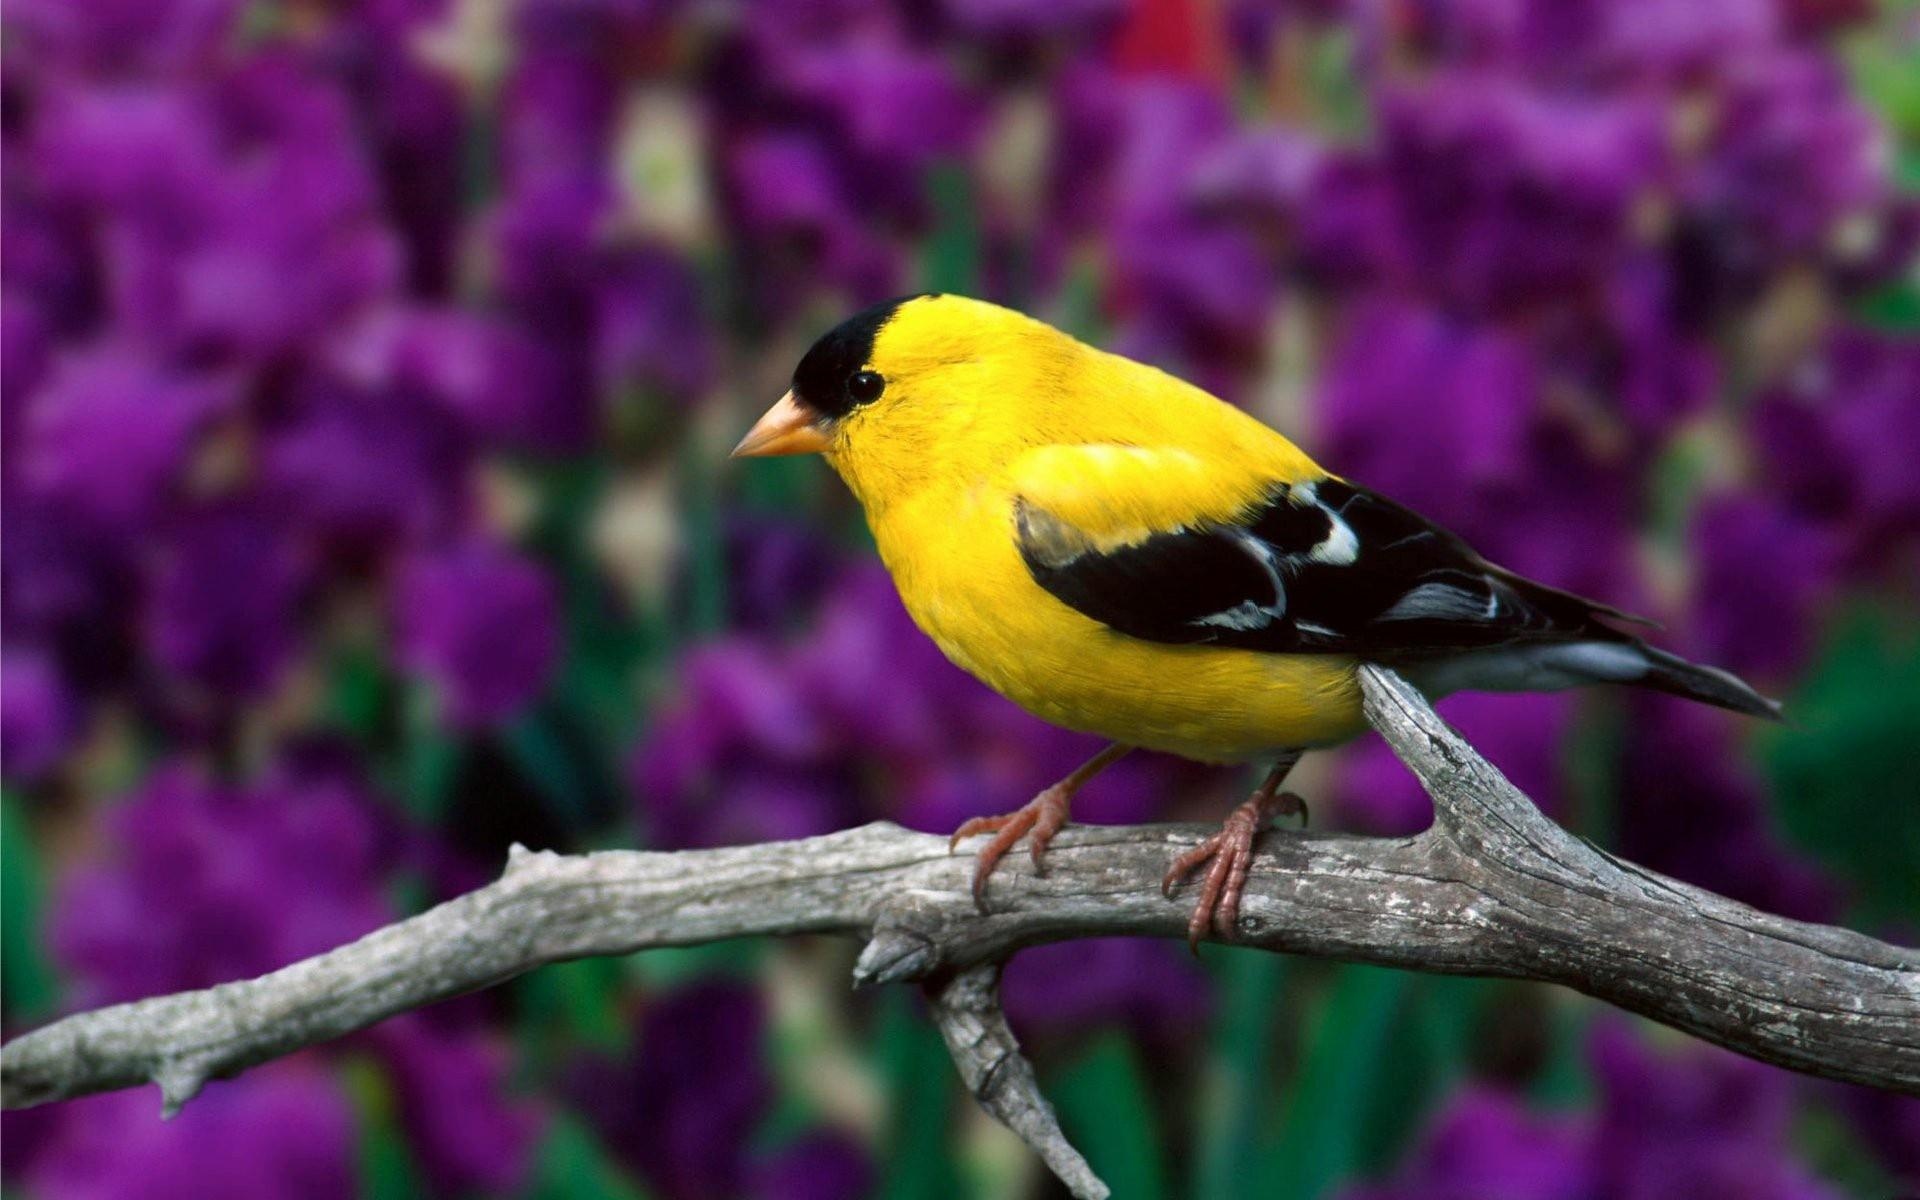 可爱的黄色小鸟壁纸640x1136分辨率下载,可爱的黄色小鸟壁纸,高清图片